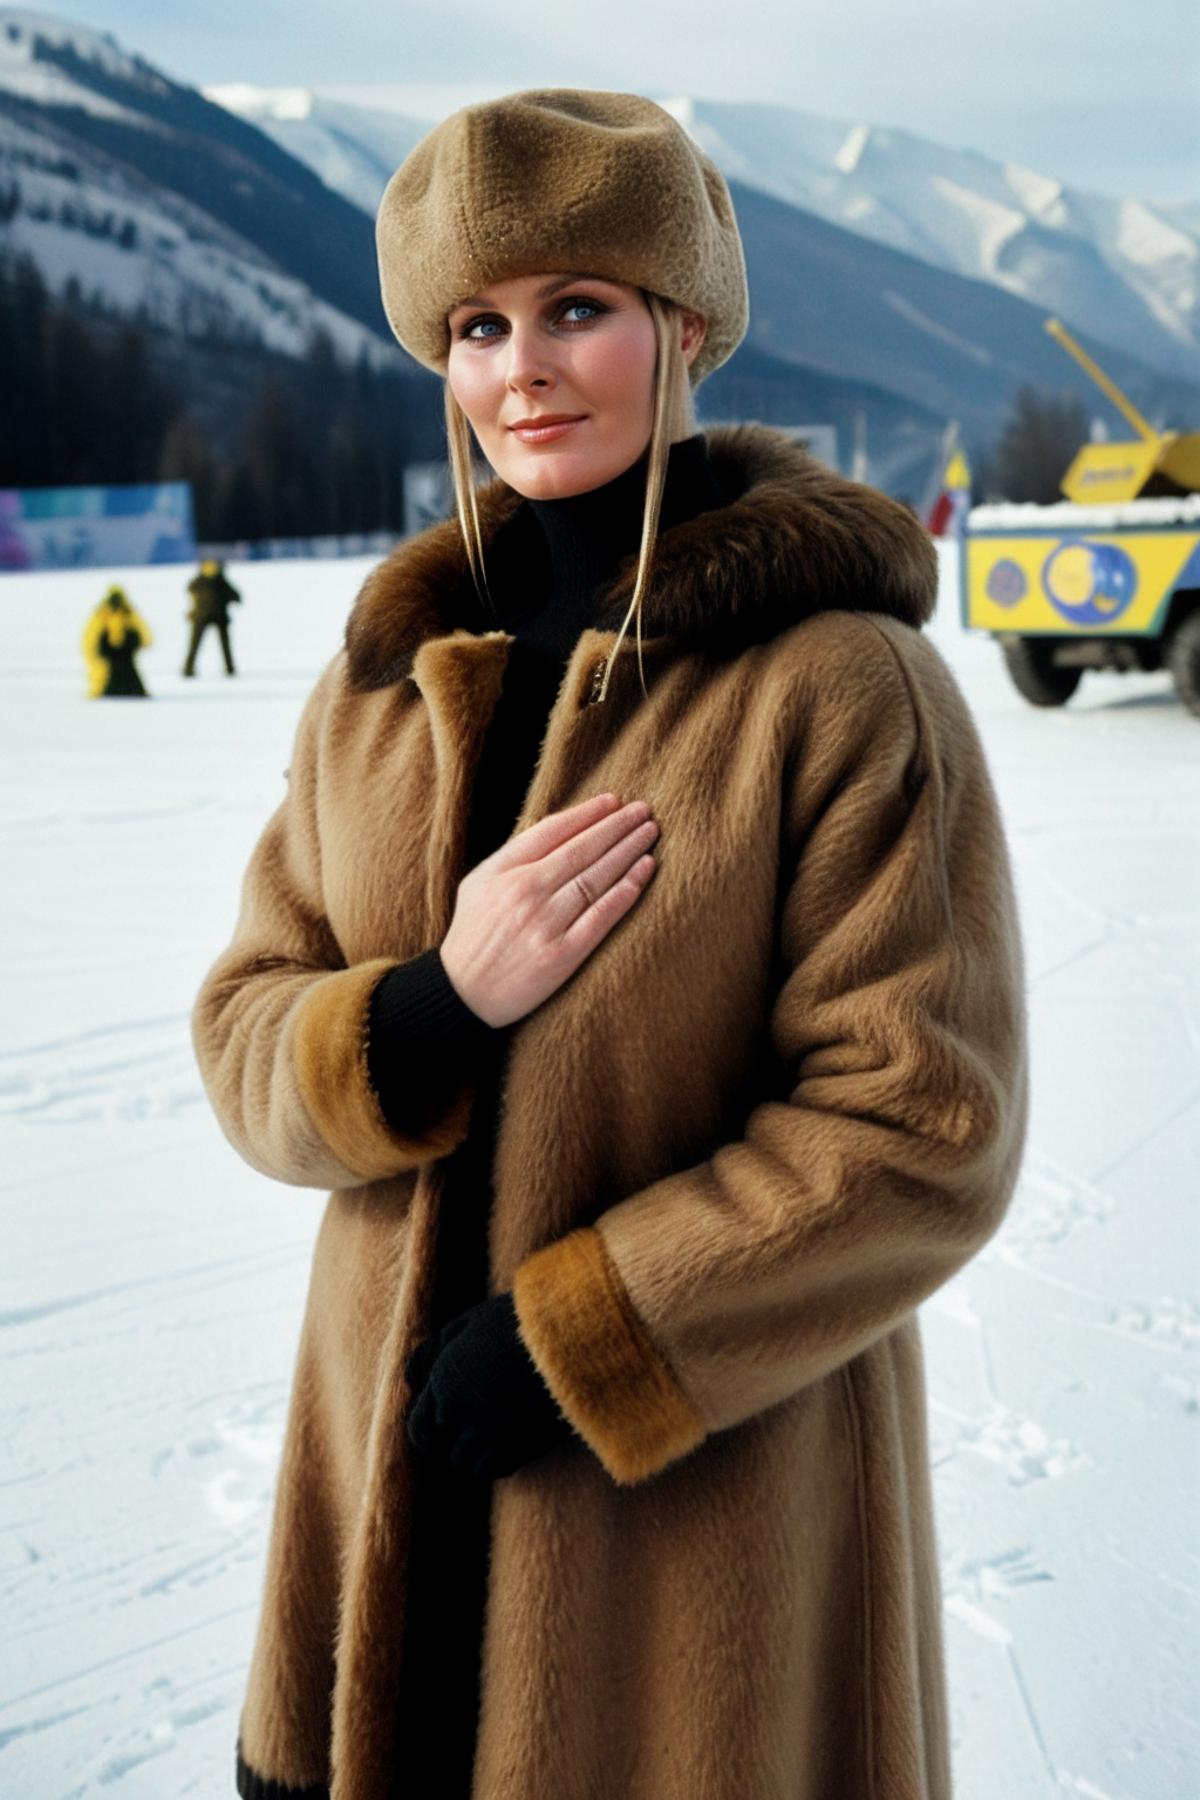 Bo Derek - Actress 1970's Era image by civitai730